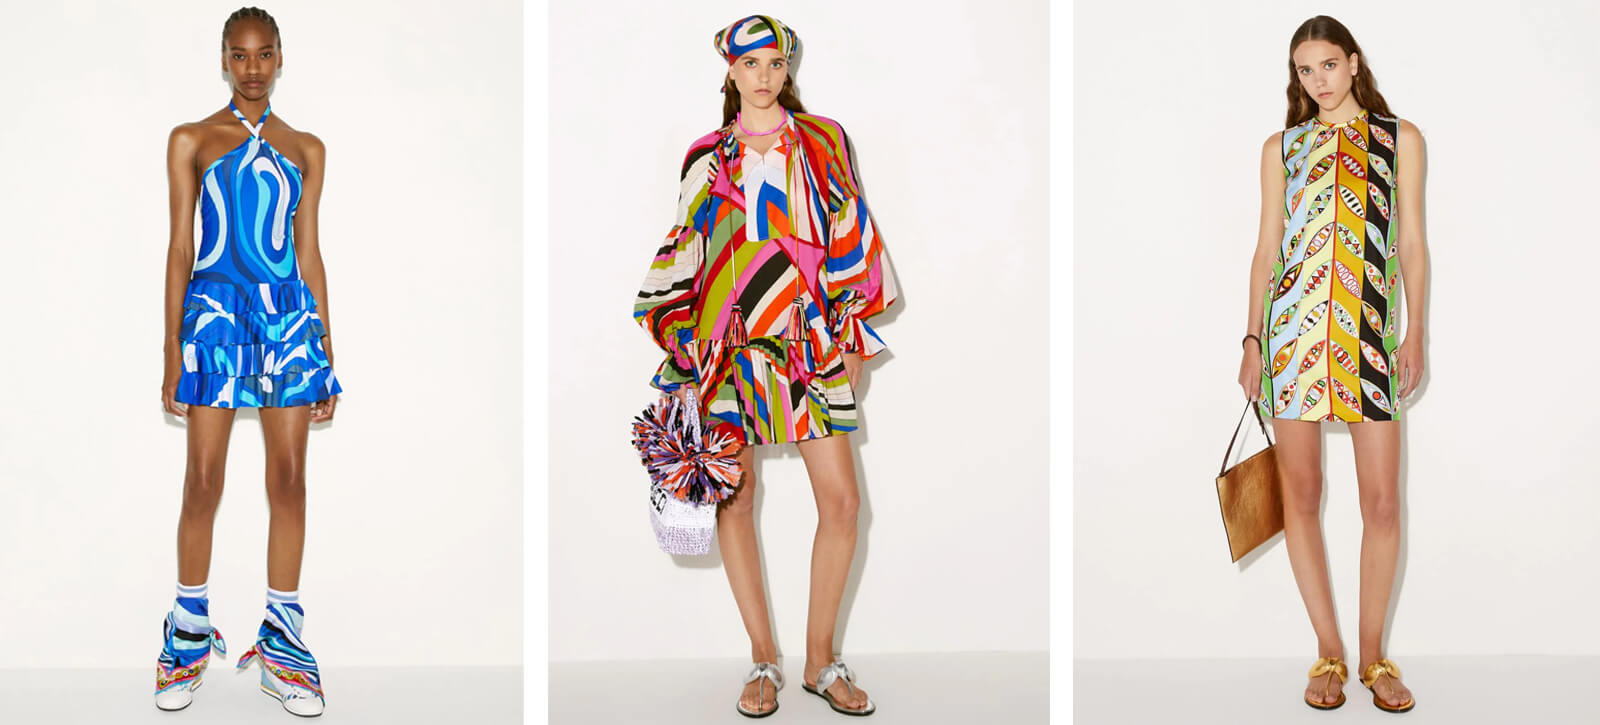 Emilio Pucci F/W 17 womenswear #41 - Tagwalk: The Fashion Search